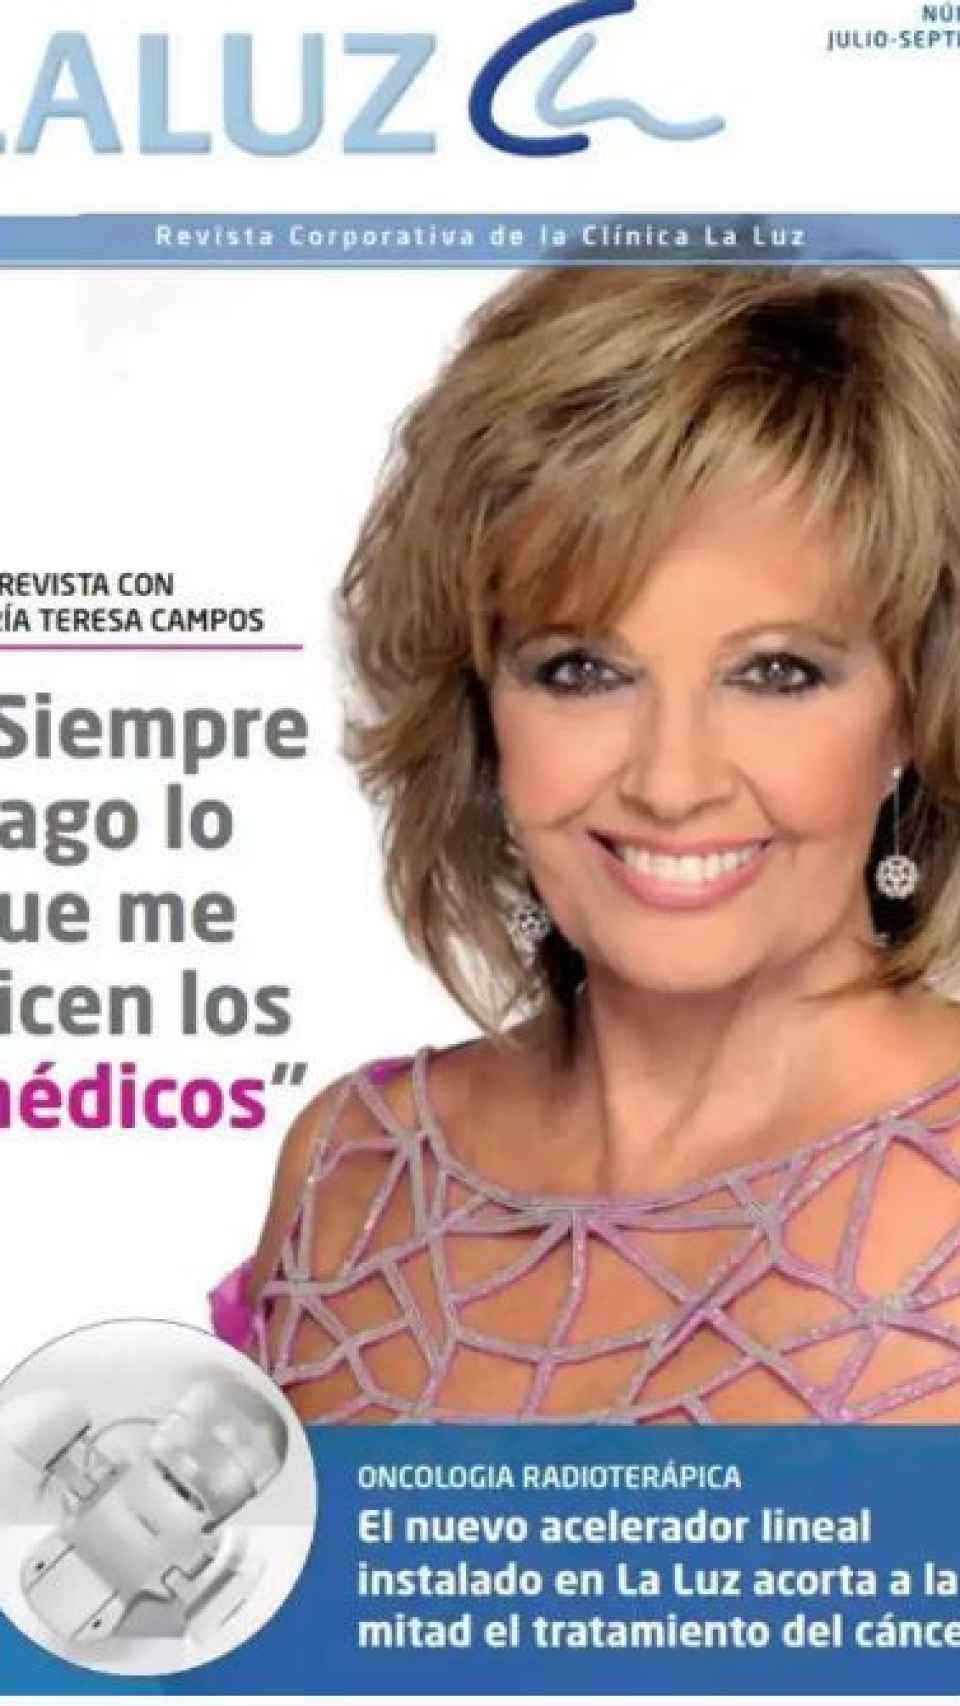 Teresa Campos prestando su imagen para el hospital La Luz.